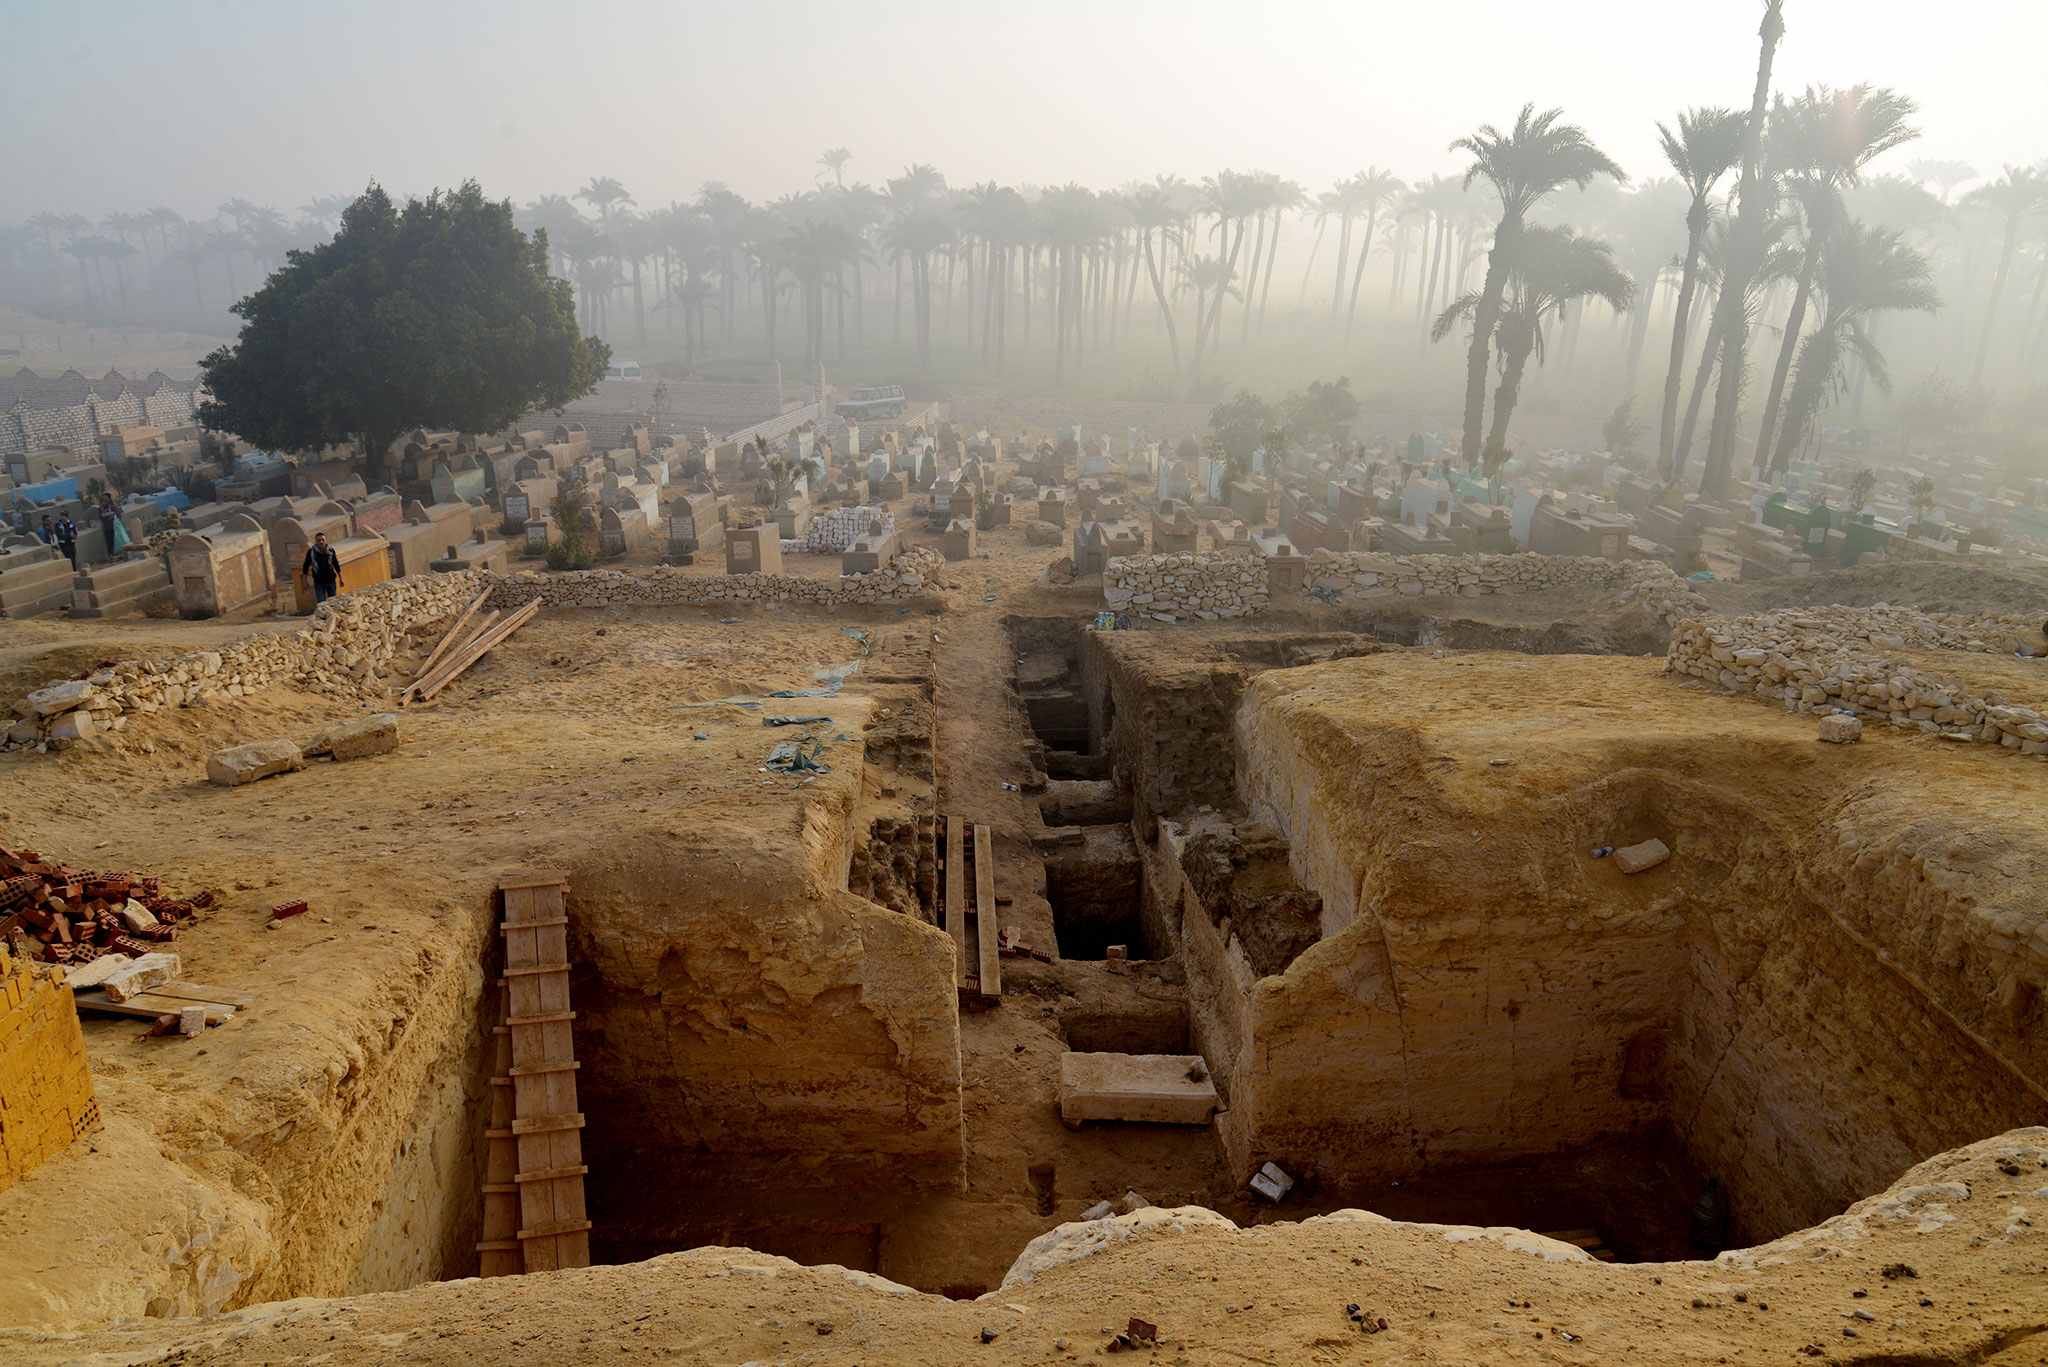 802 tombes et le "Livre des Morts" ont été découverts dans la nécropole de Lisht en Egypte 1